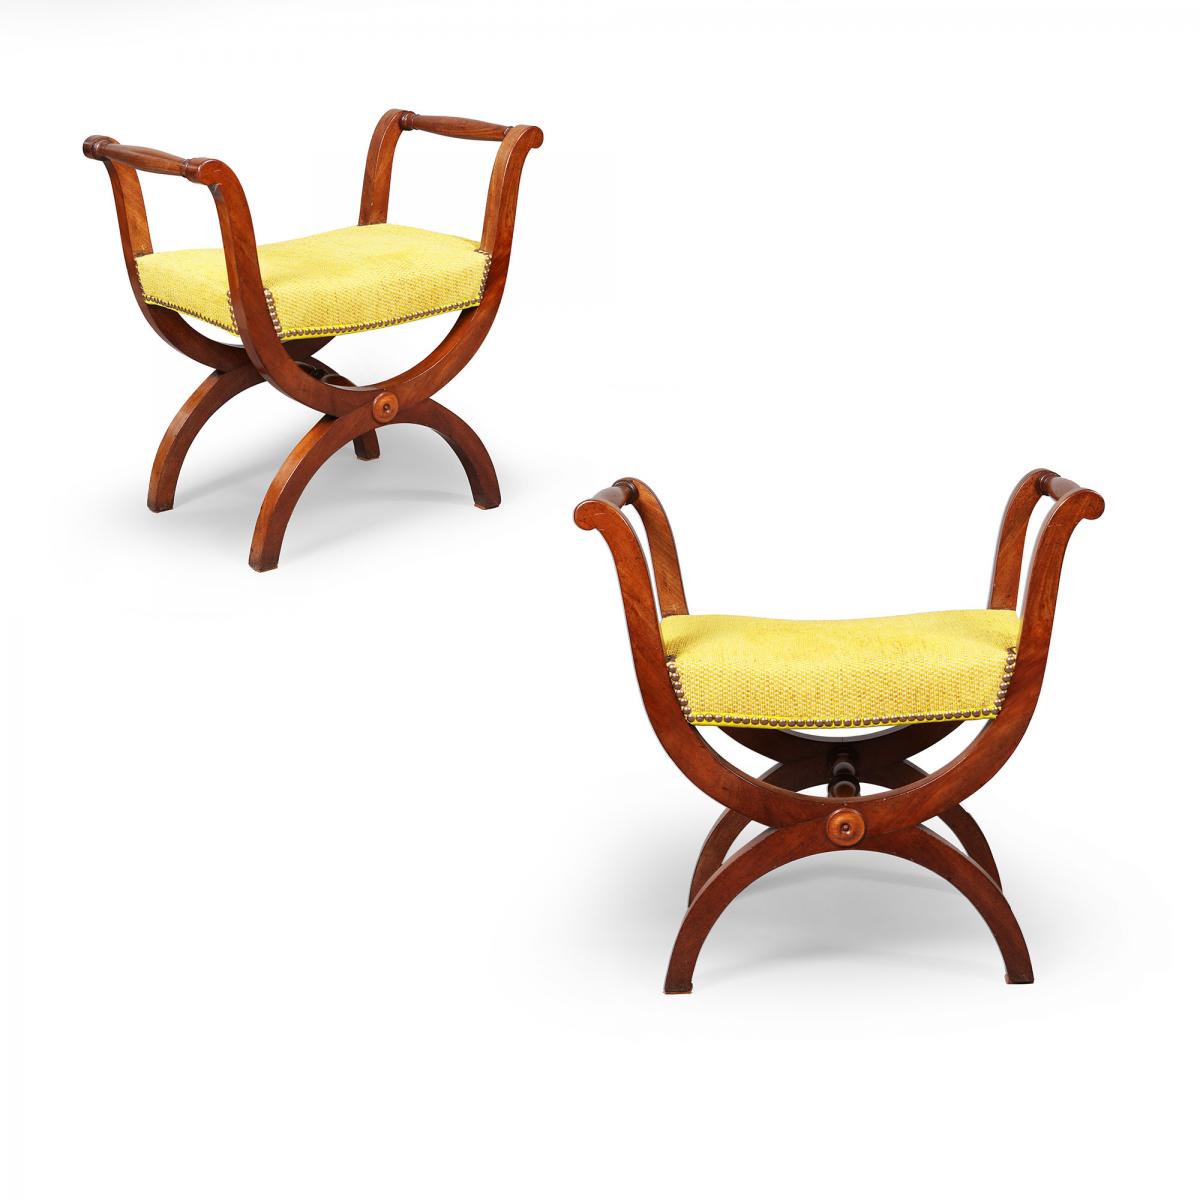 A pair of mahogany X frame stools